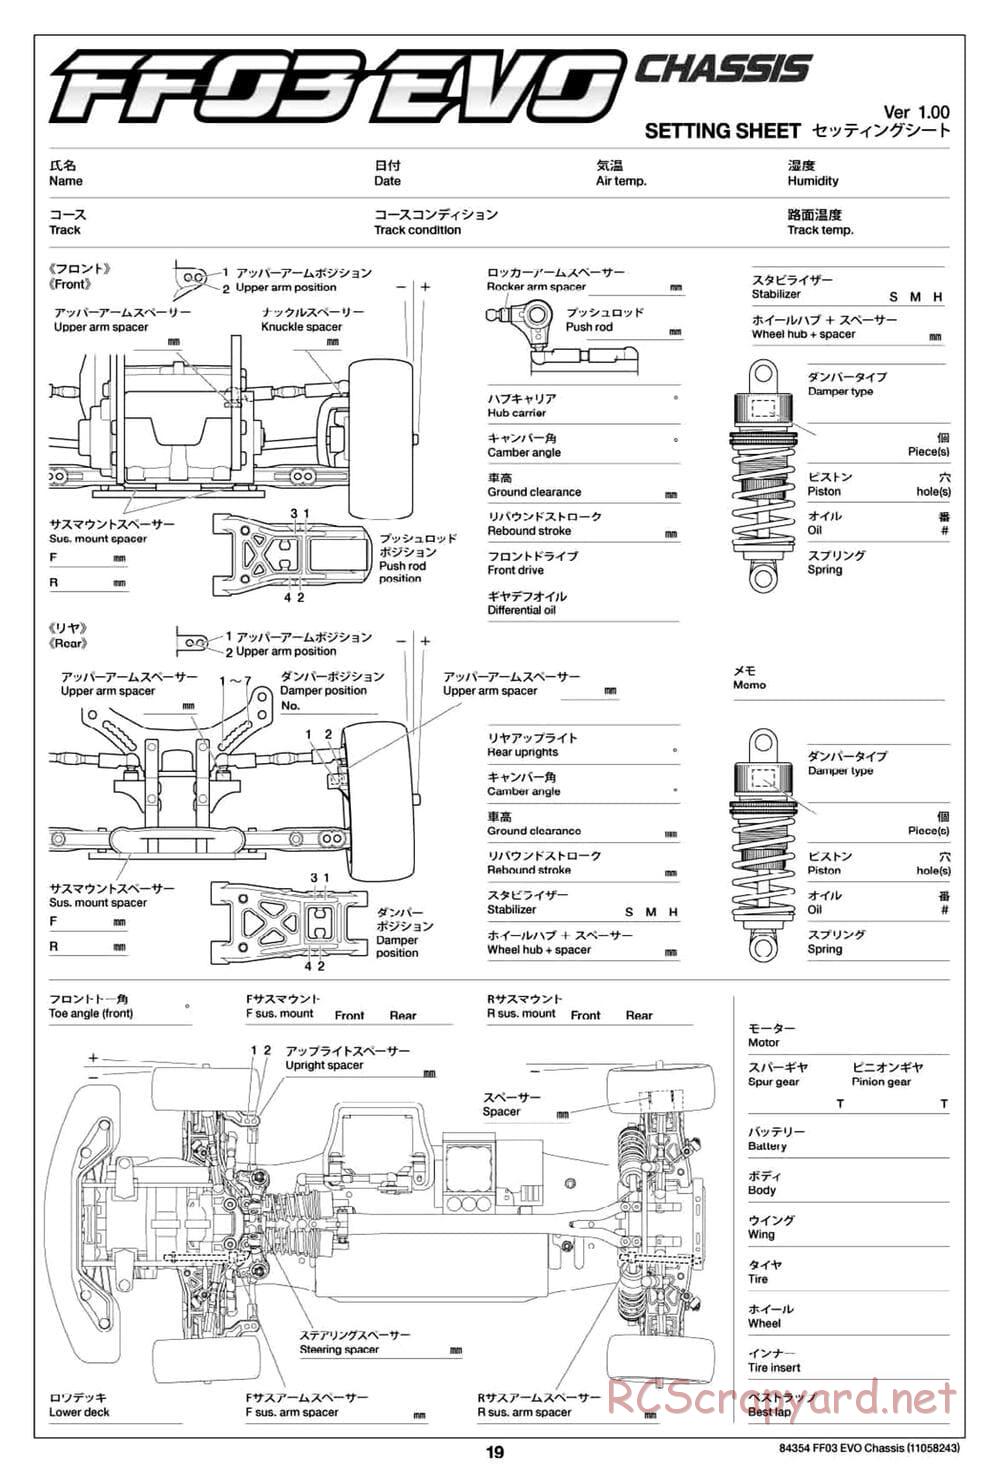 Tamiya - FF-03 Evo Chassis - Manual - Page 19